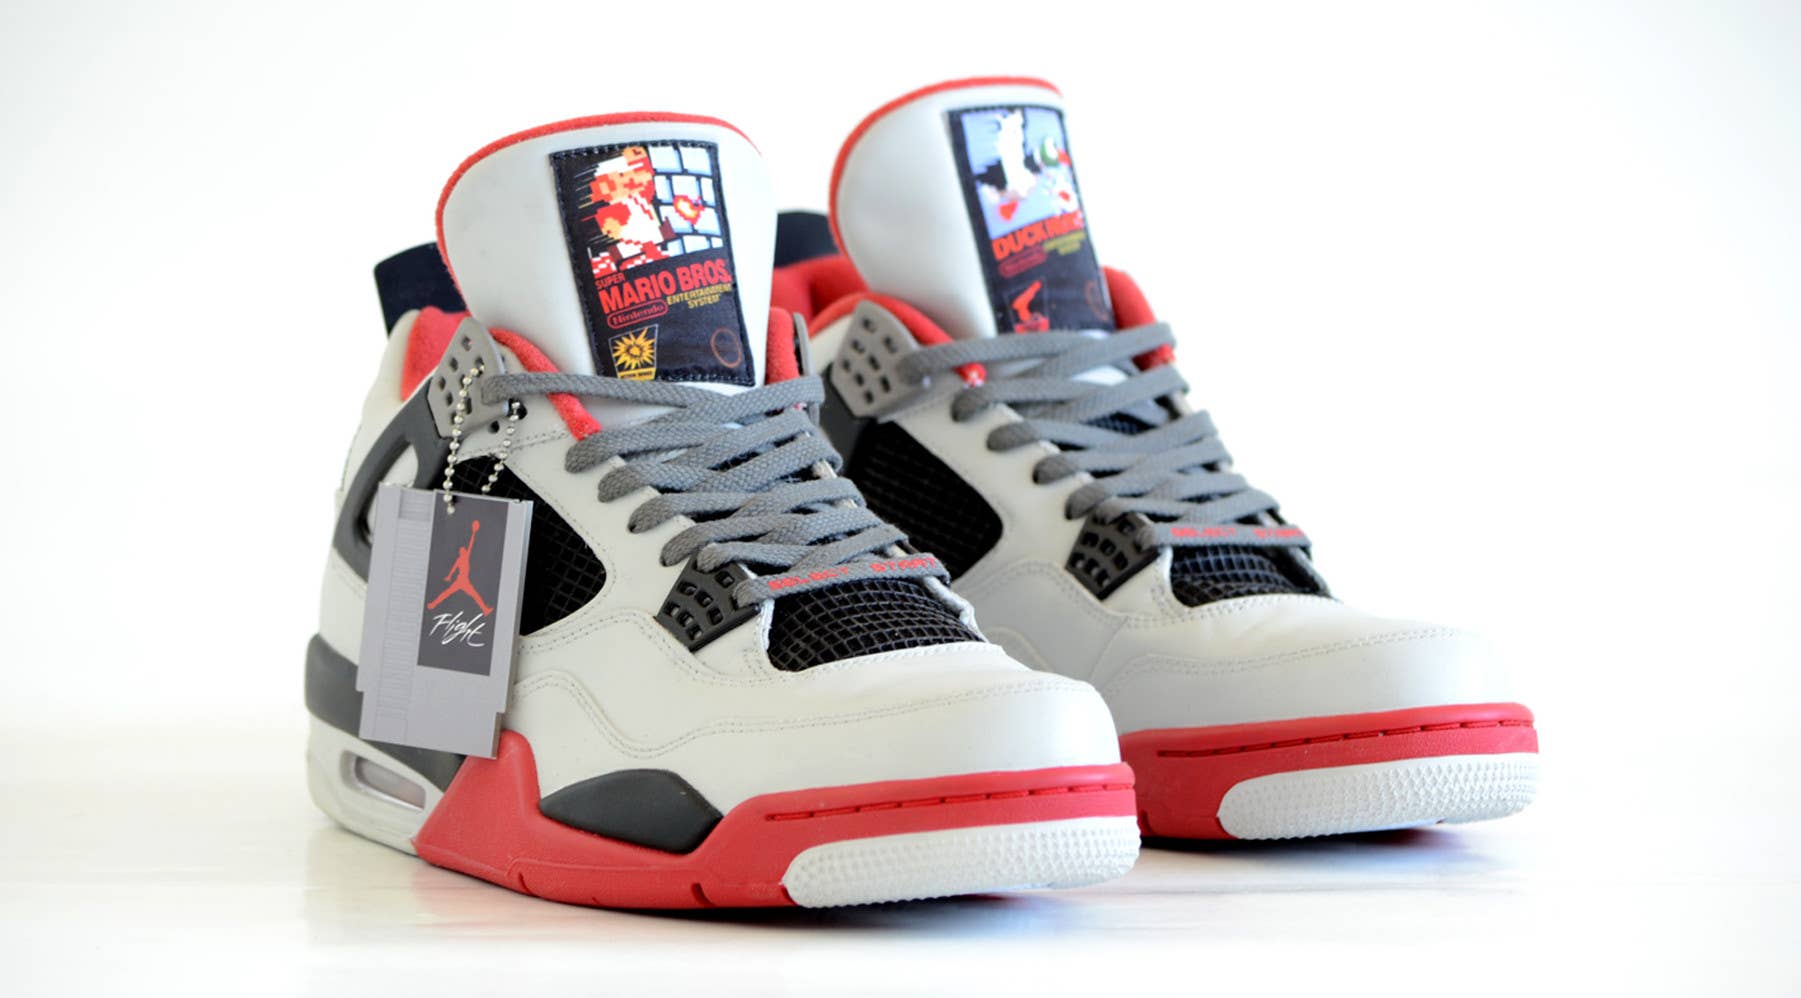 Air Jordan 4 Nintendo Custom (1)